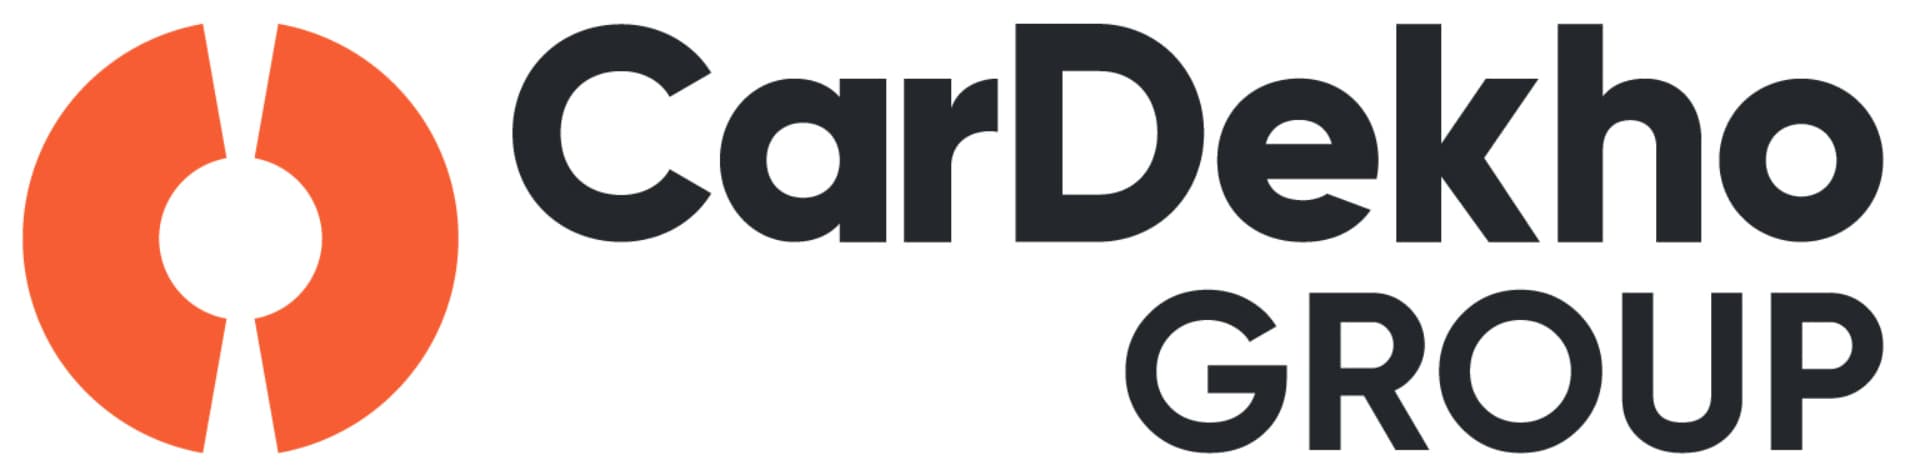 Cardekho Group's logo